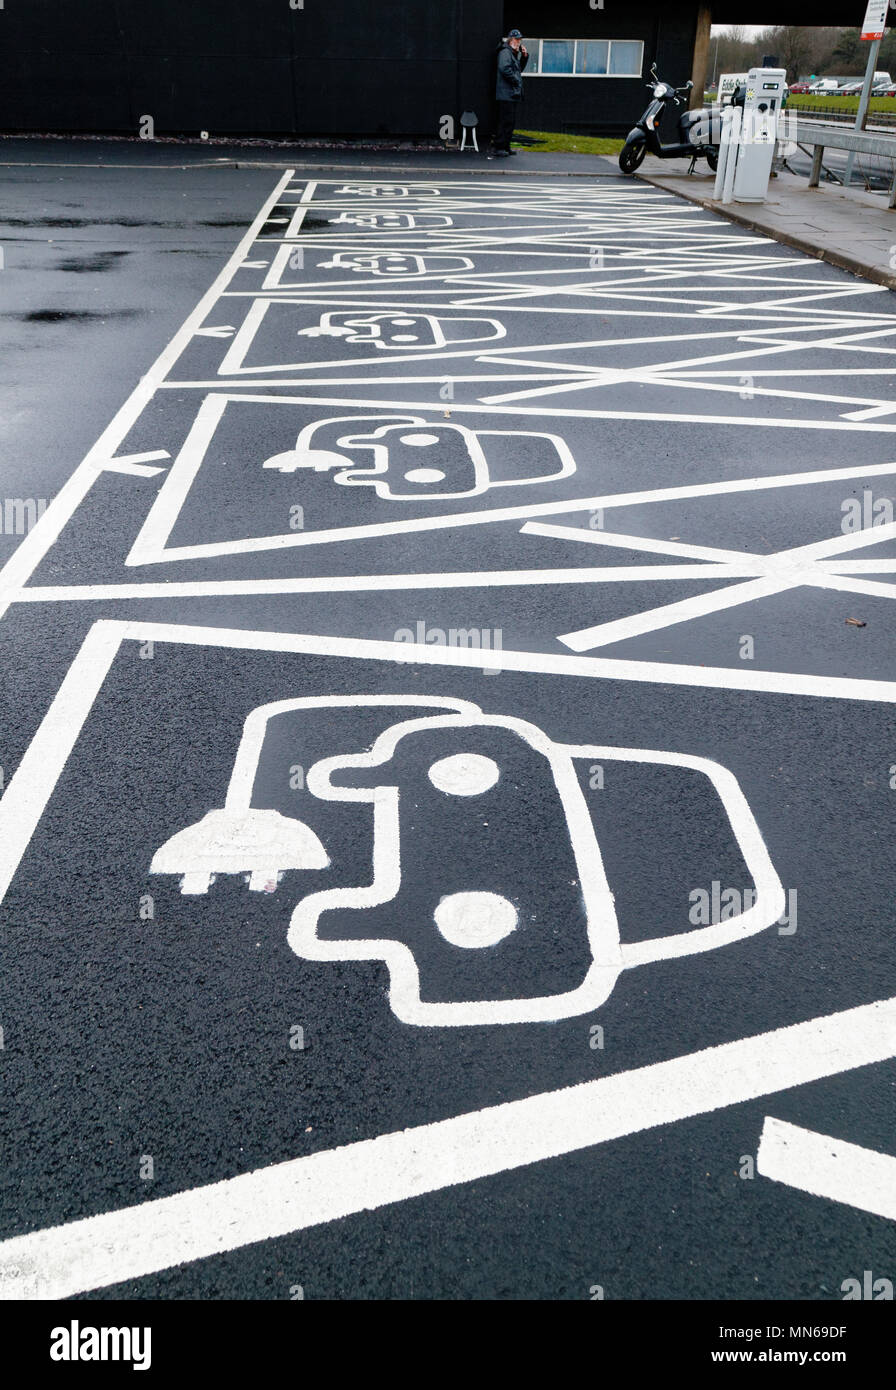 Fiche de véhicule électrique dans des endroits en une autoroute parking services en Angleterre Banque D'Images